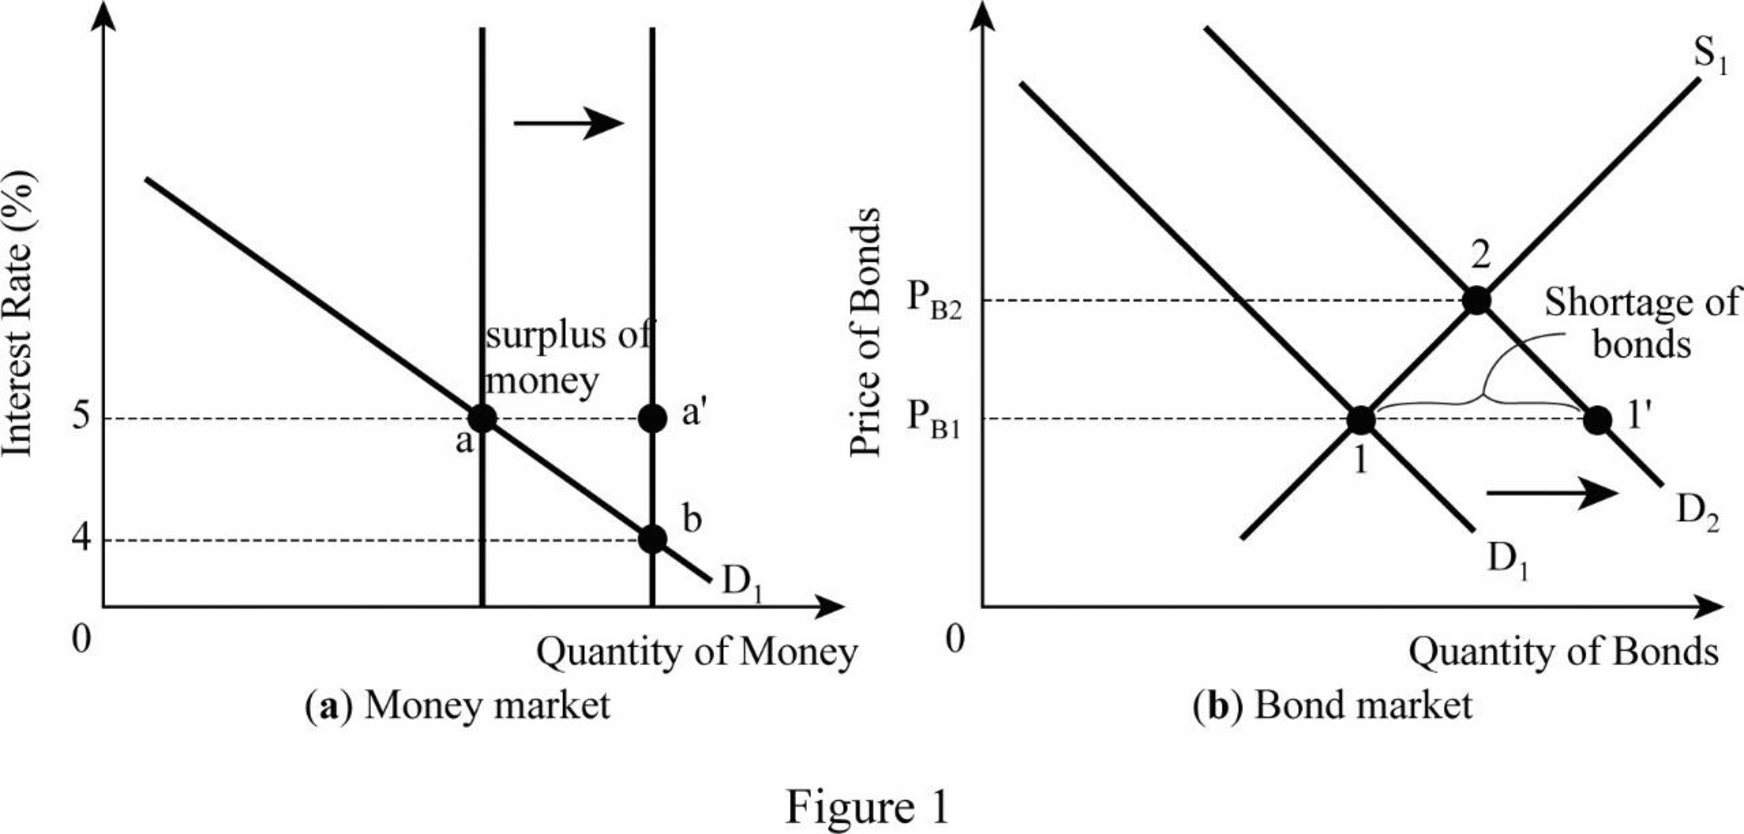 Macroeconomics - With MindTap (1 Term), Chapter D, Problem 1QP 